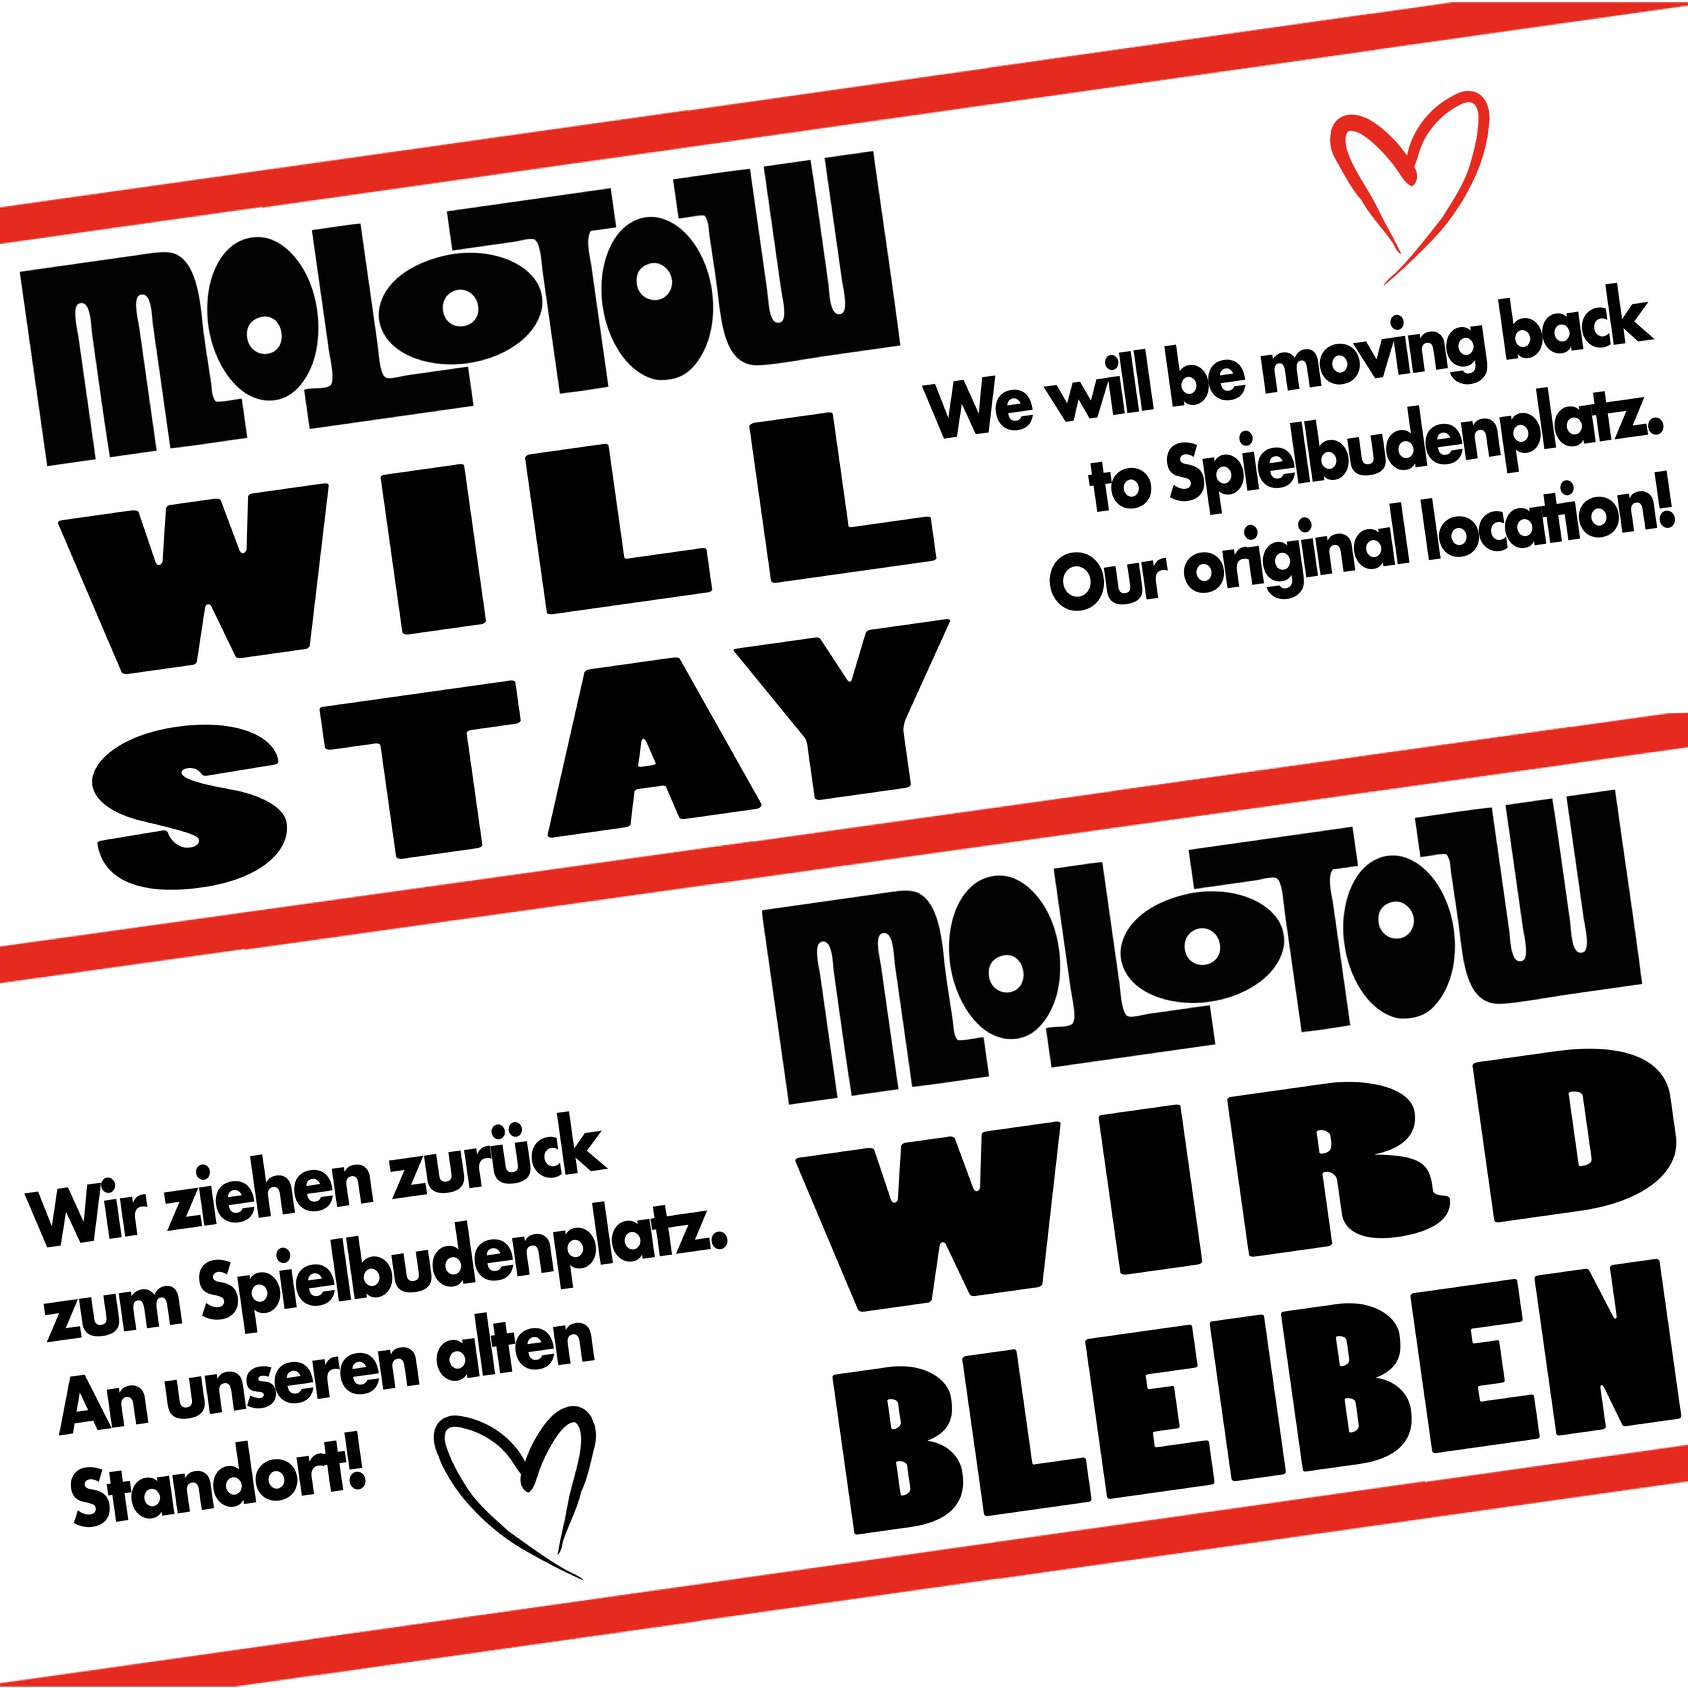 Der Hamburger Musikclub Molotow kann dank der Stadt Hamburg zurück an seinen ursprünglichen Standort. Foto: Molotow Facebook-Post